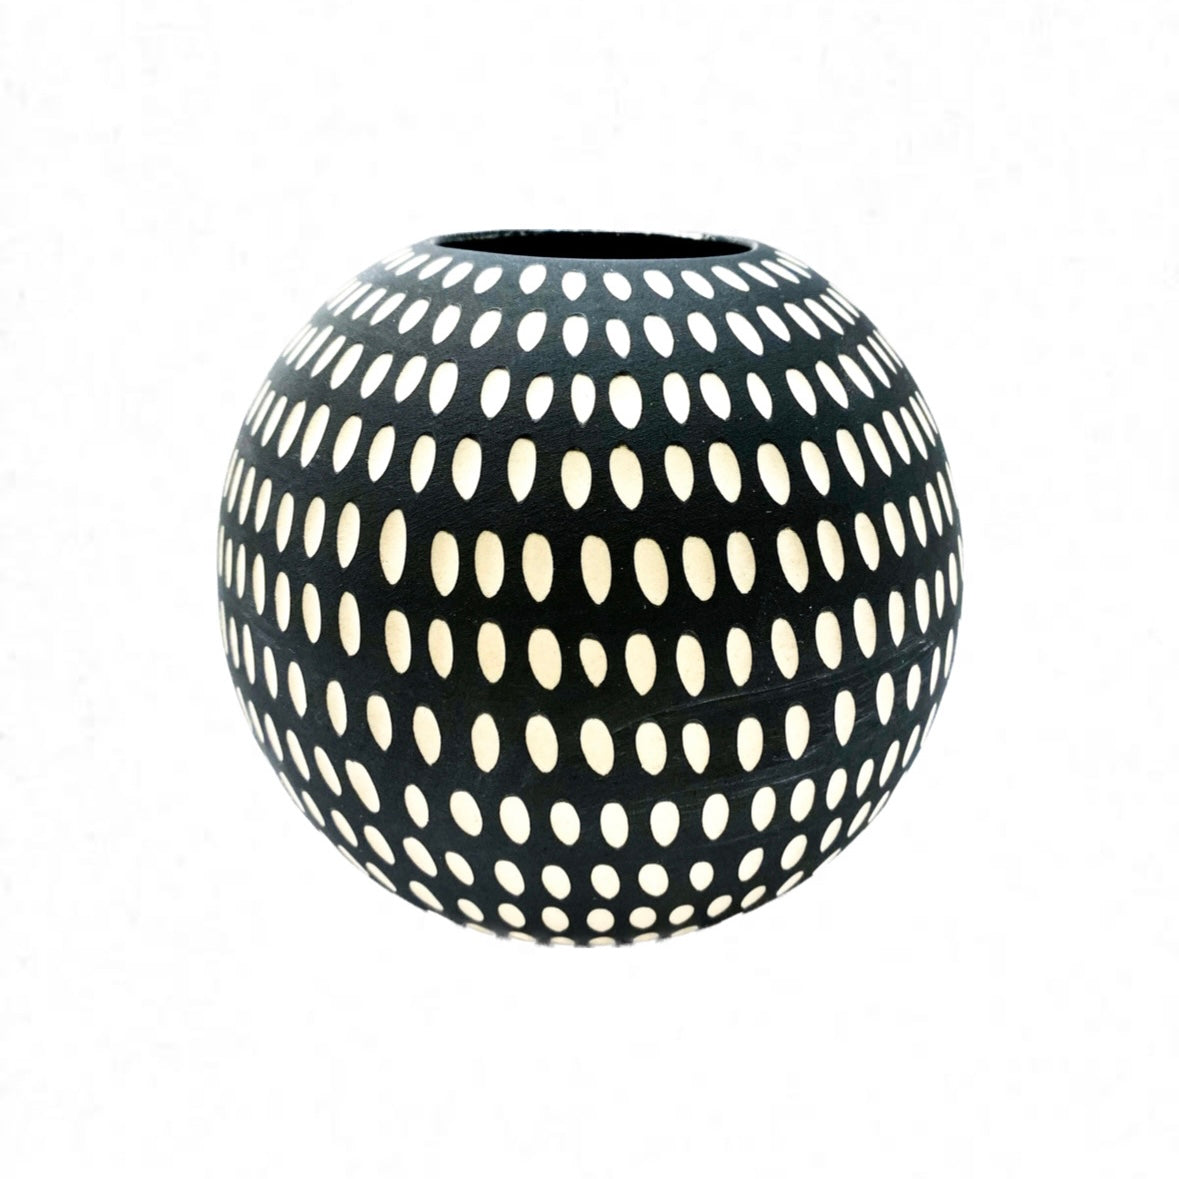 Sharon Muir - Black & White Ball Vase